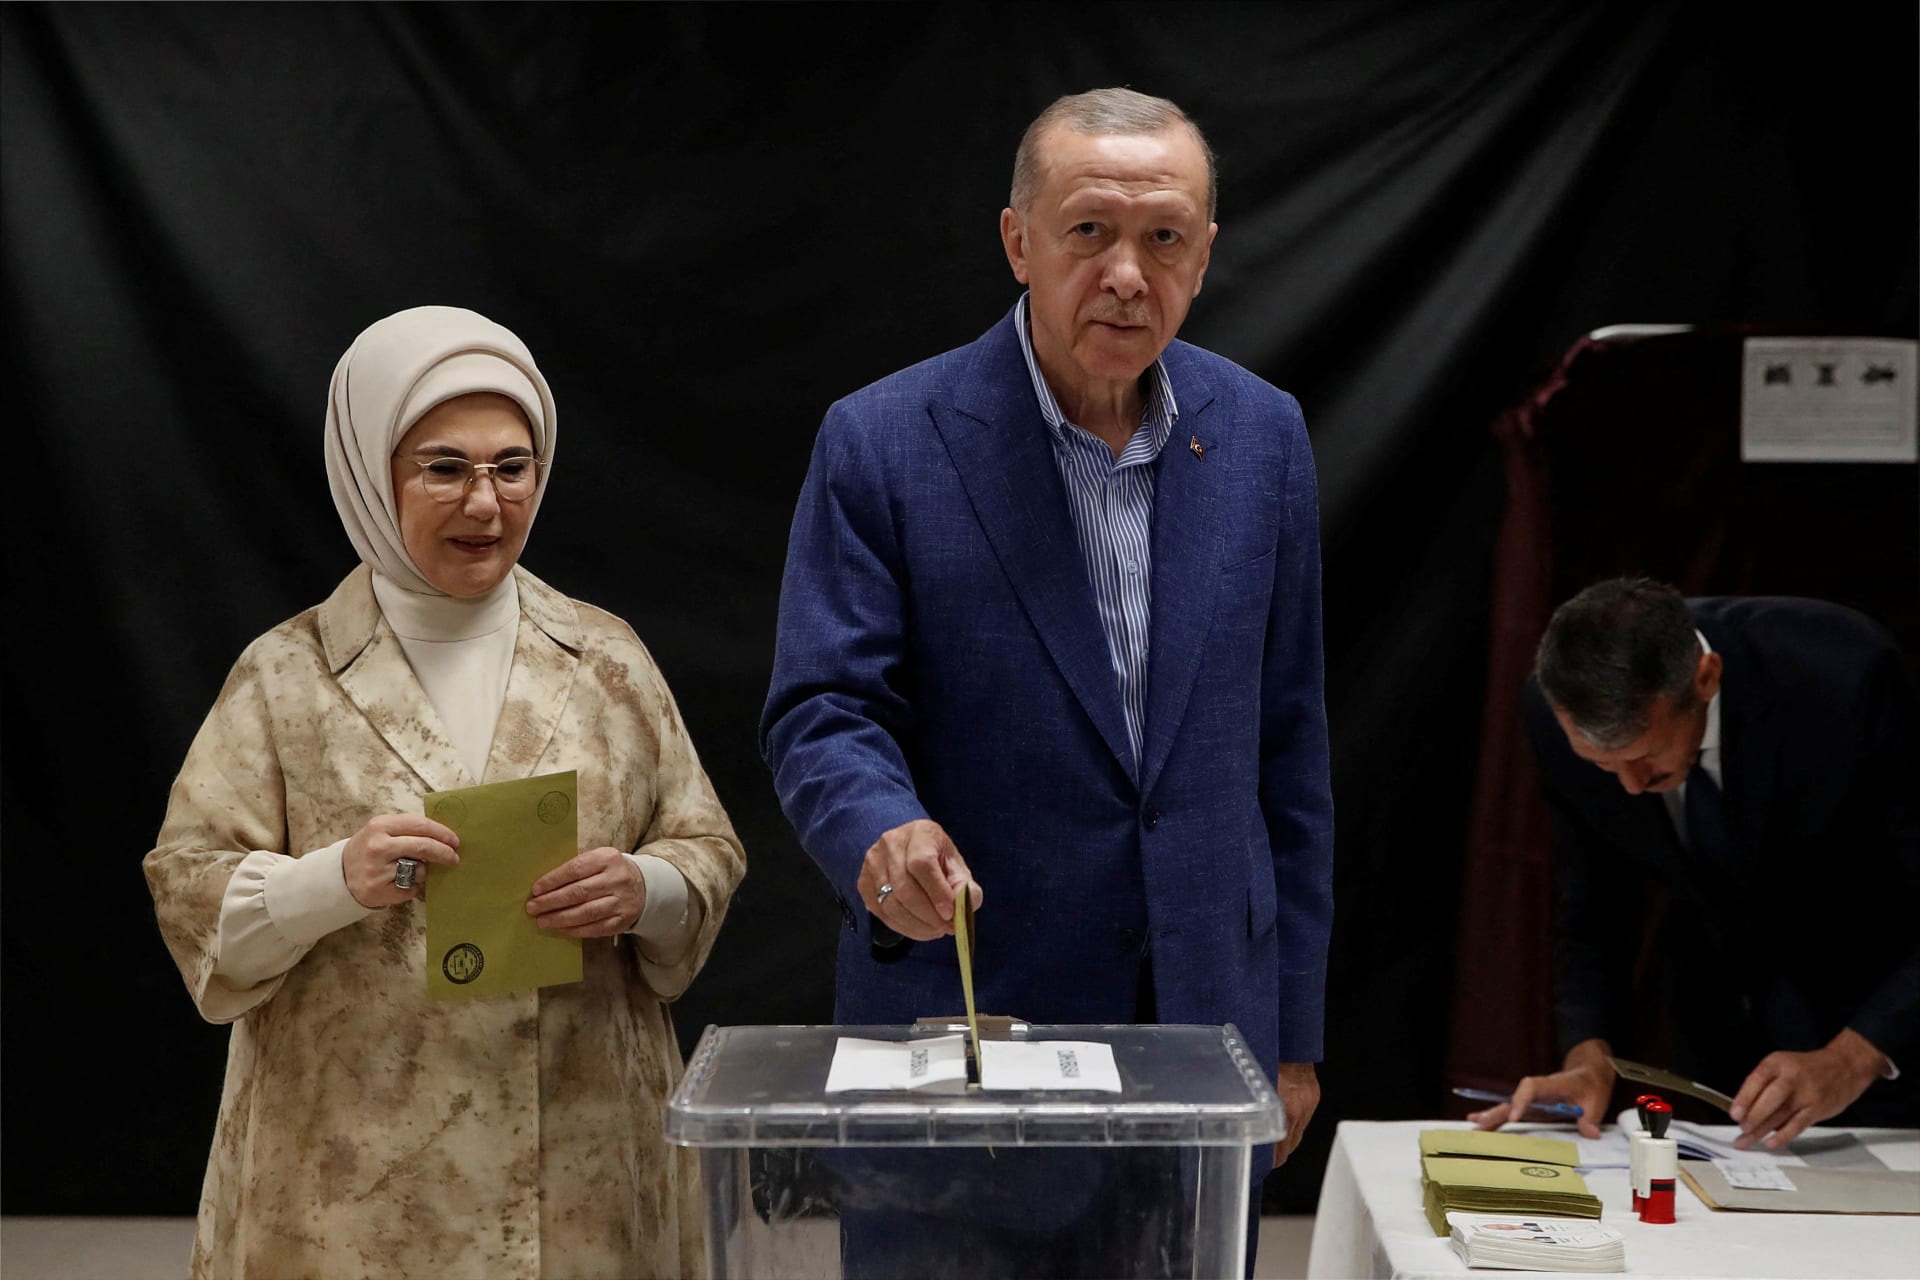 بالصور.. أردوغان وكليتشدار أوغلو يدليان بصوتيهما بجولة الإعادة